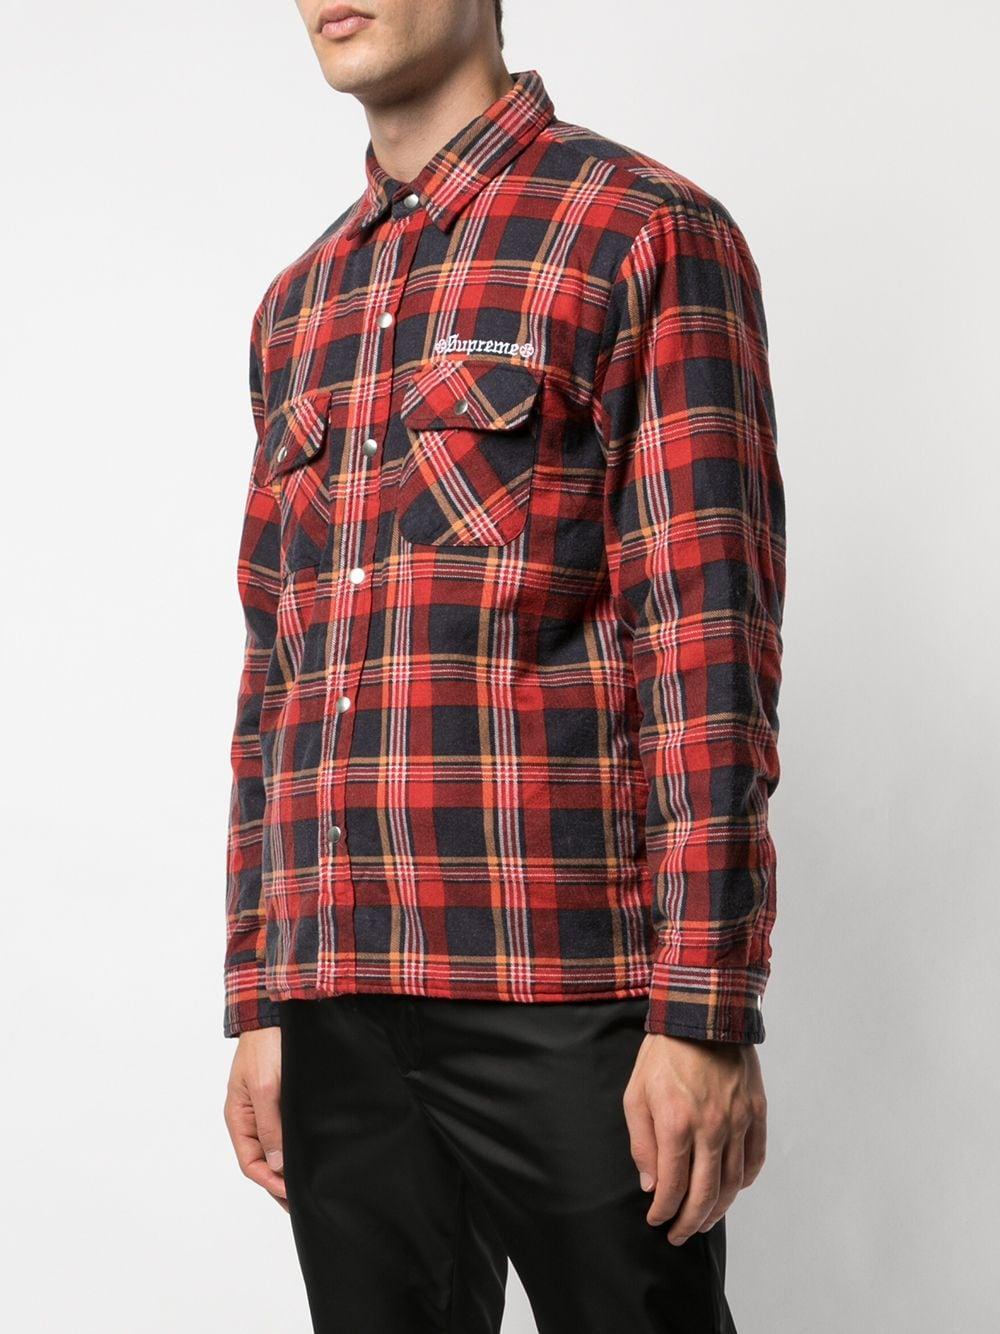 40％割引L低価格 supreme quilted plaid flannel shirt シャツ メンズL 